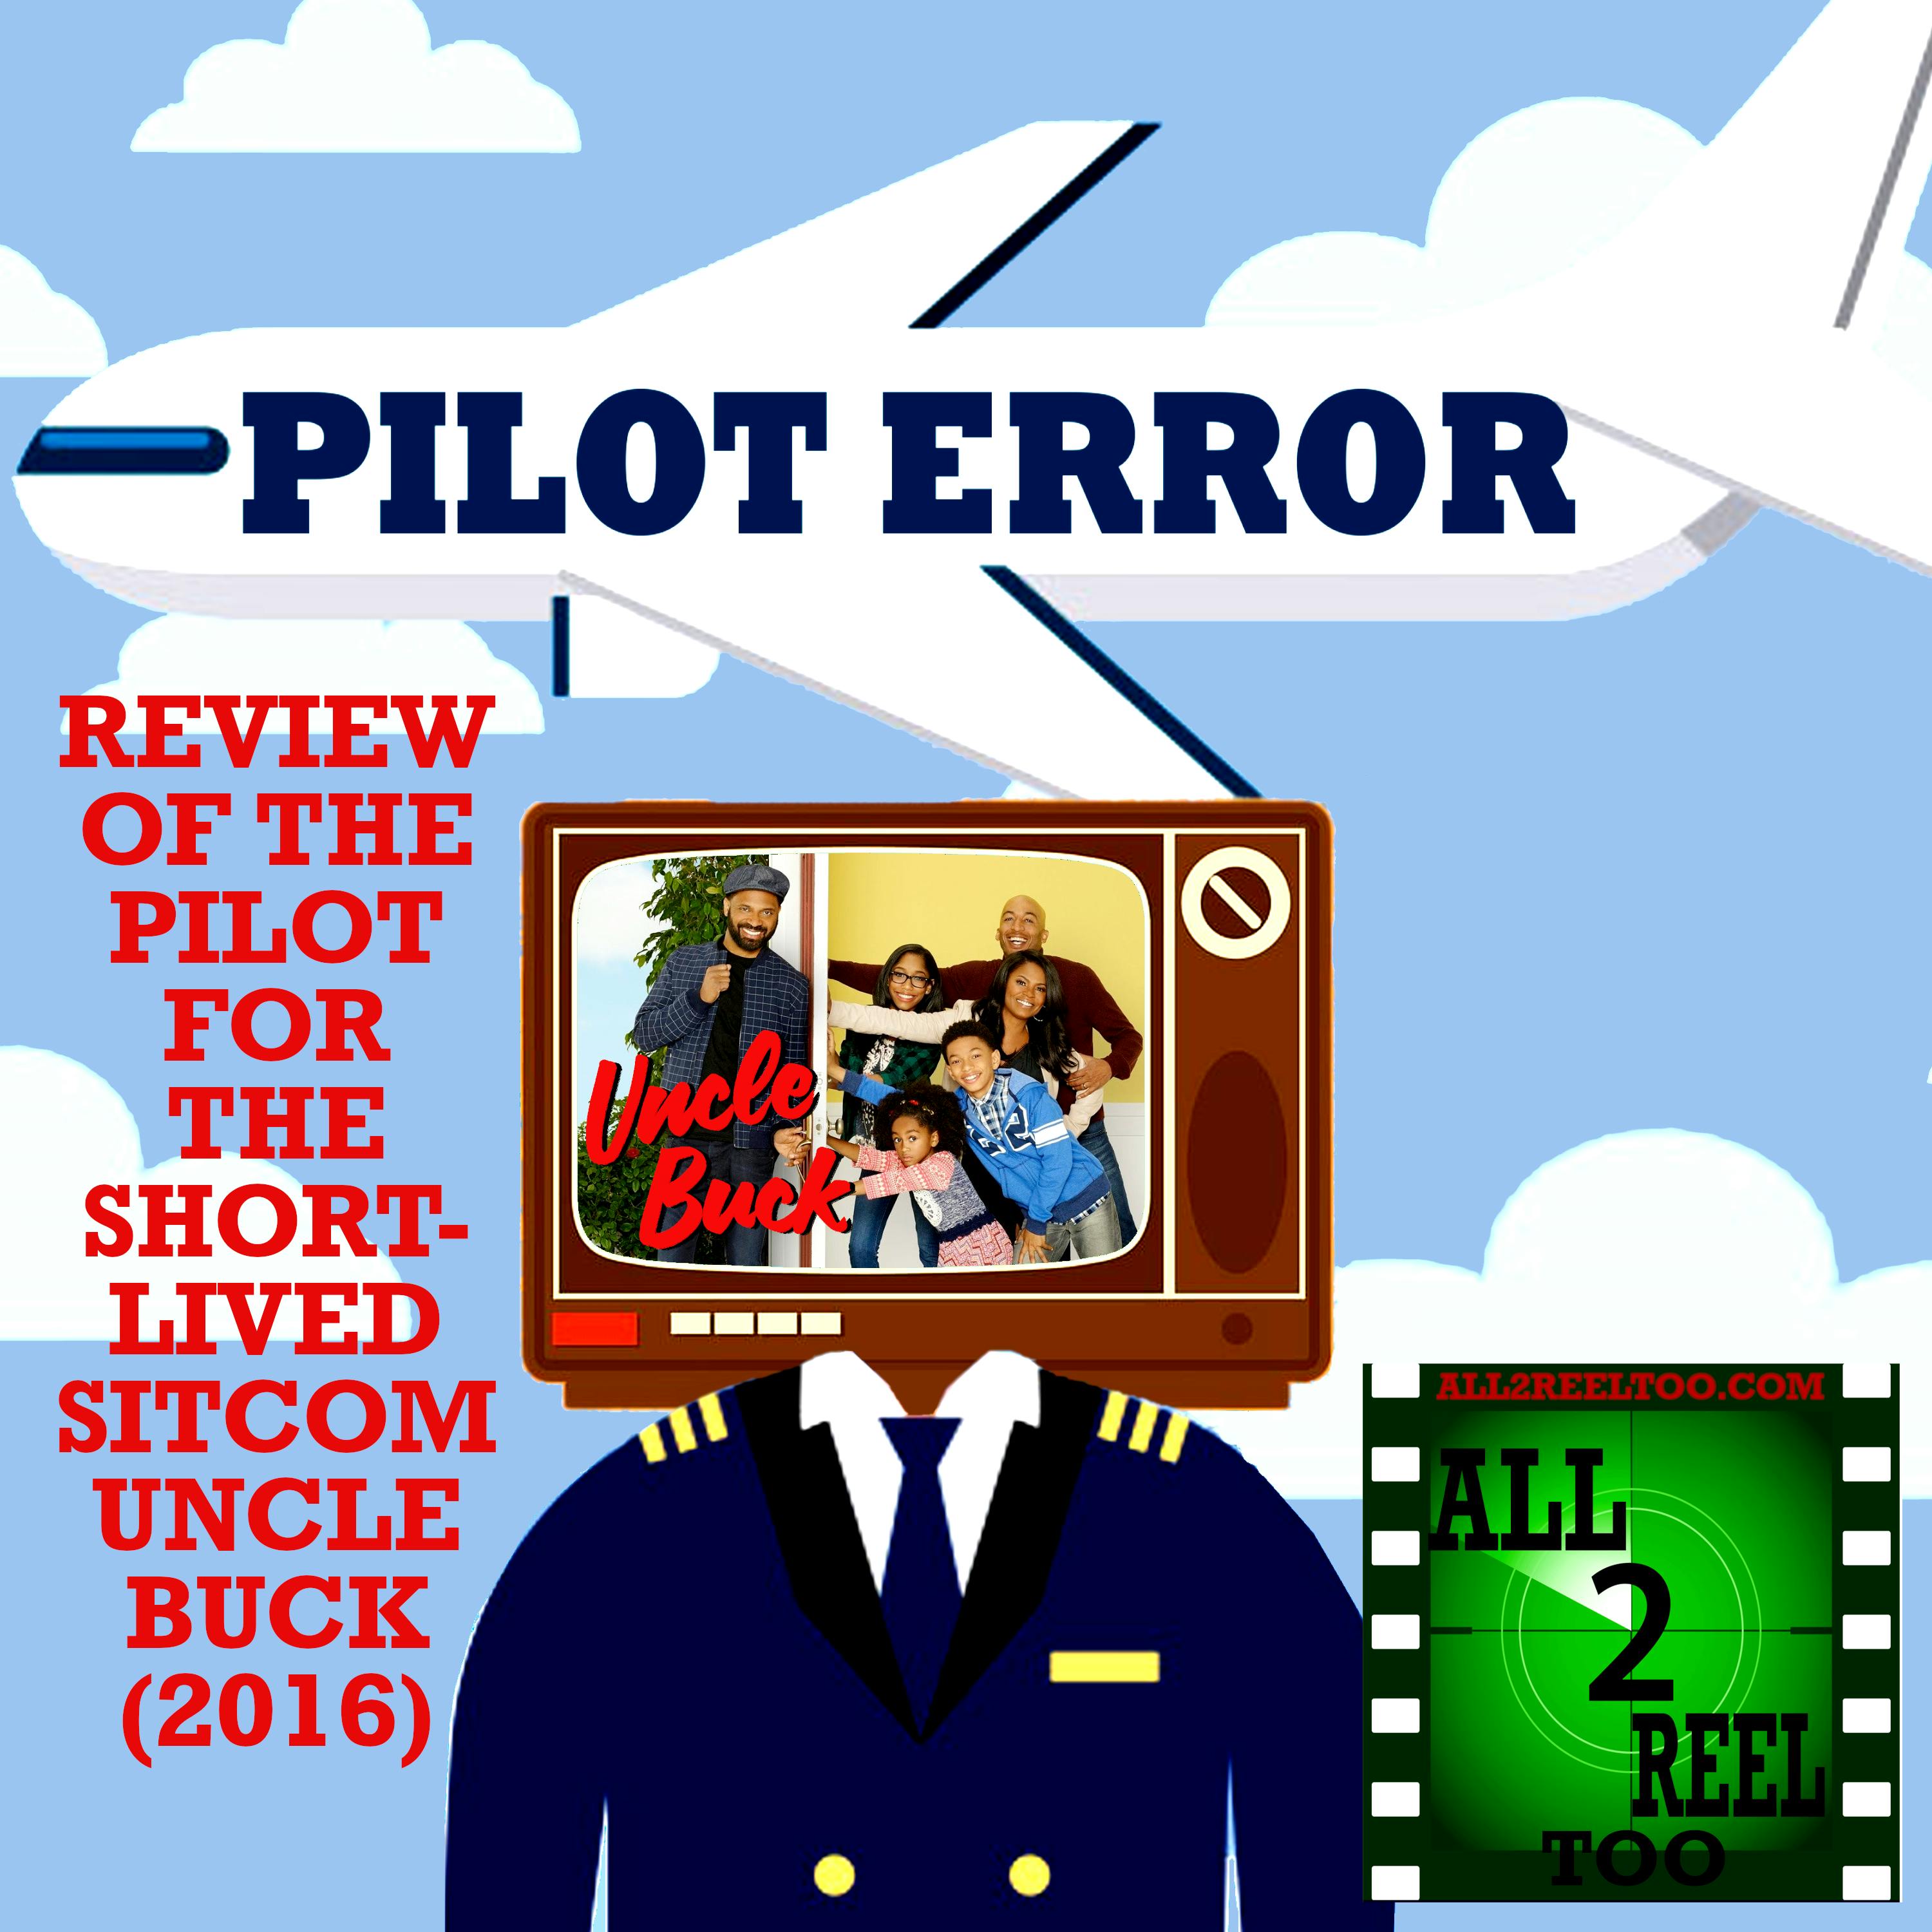 Uncle Buck (2016)  - PILOT ERROR REVIEW